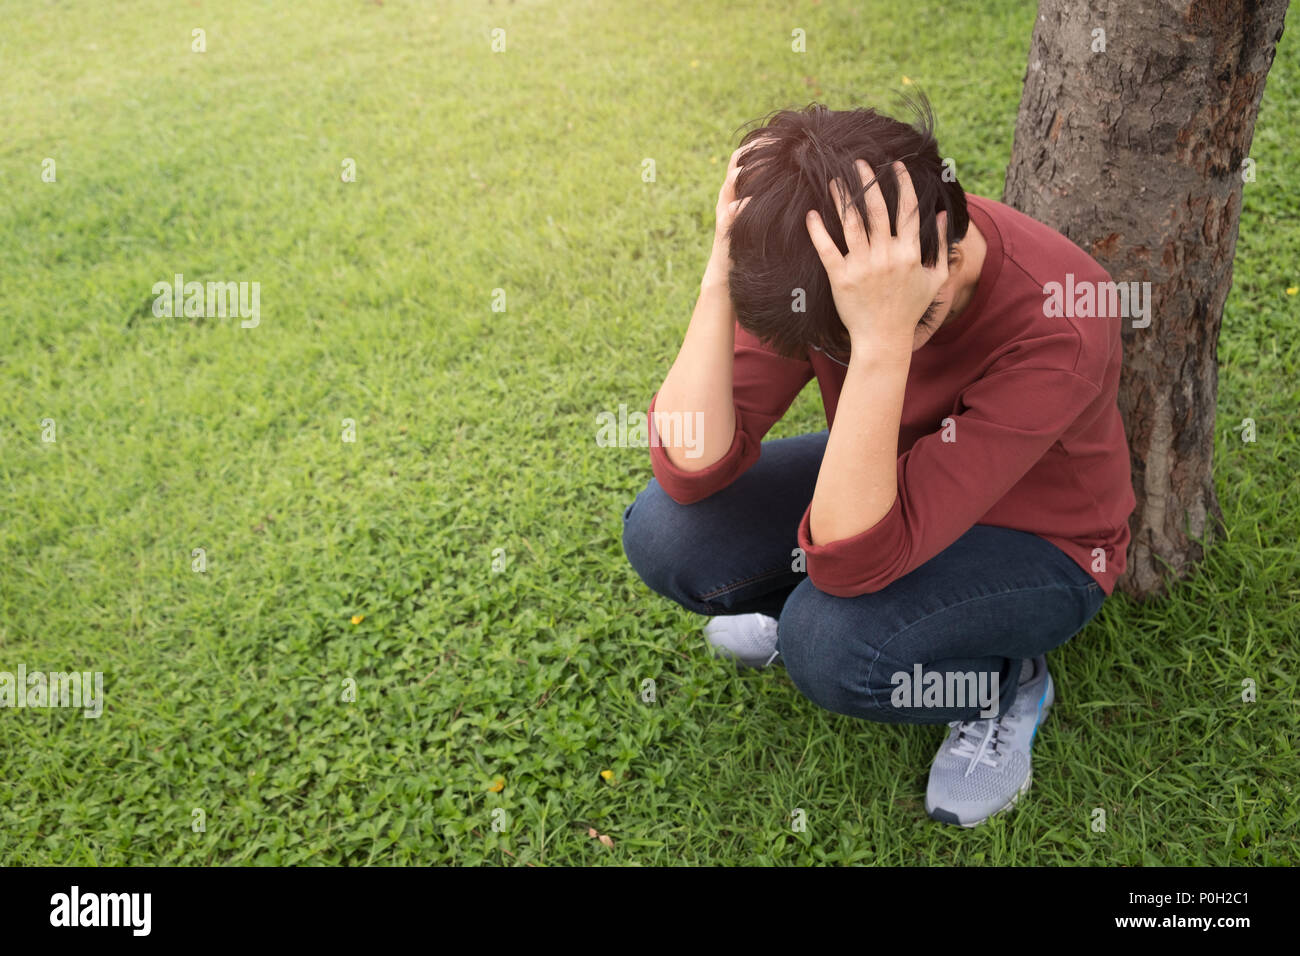 Une personne porte une chemise rouge, s'empare de sa tête avec le stress dans le jardin au coucher du soleil. La santé mentale, la dépression concept. Banque D'Images